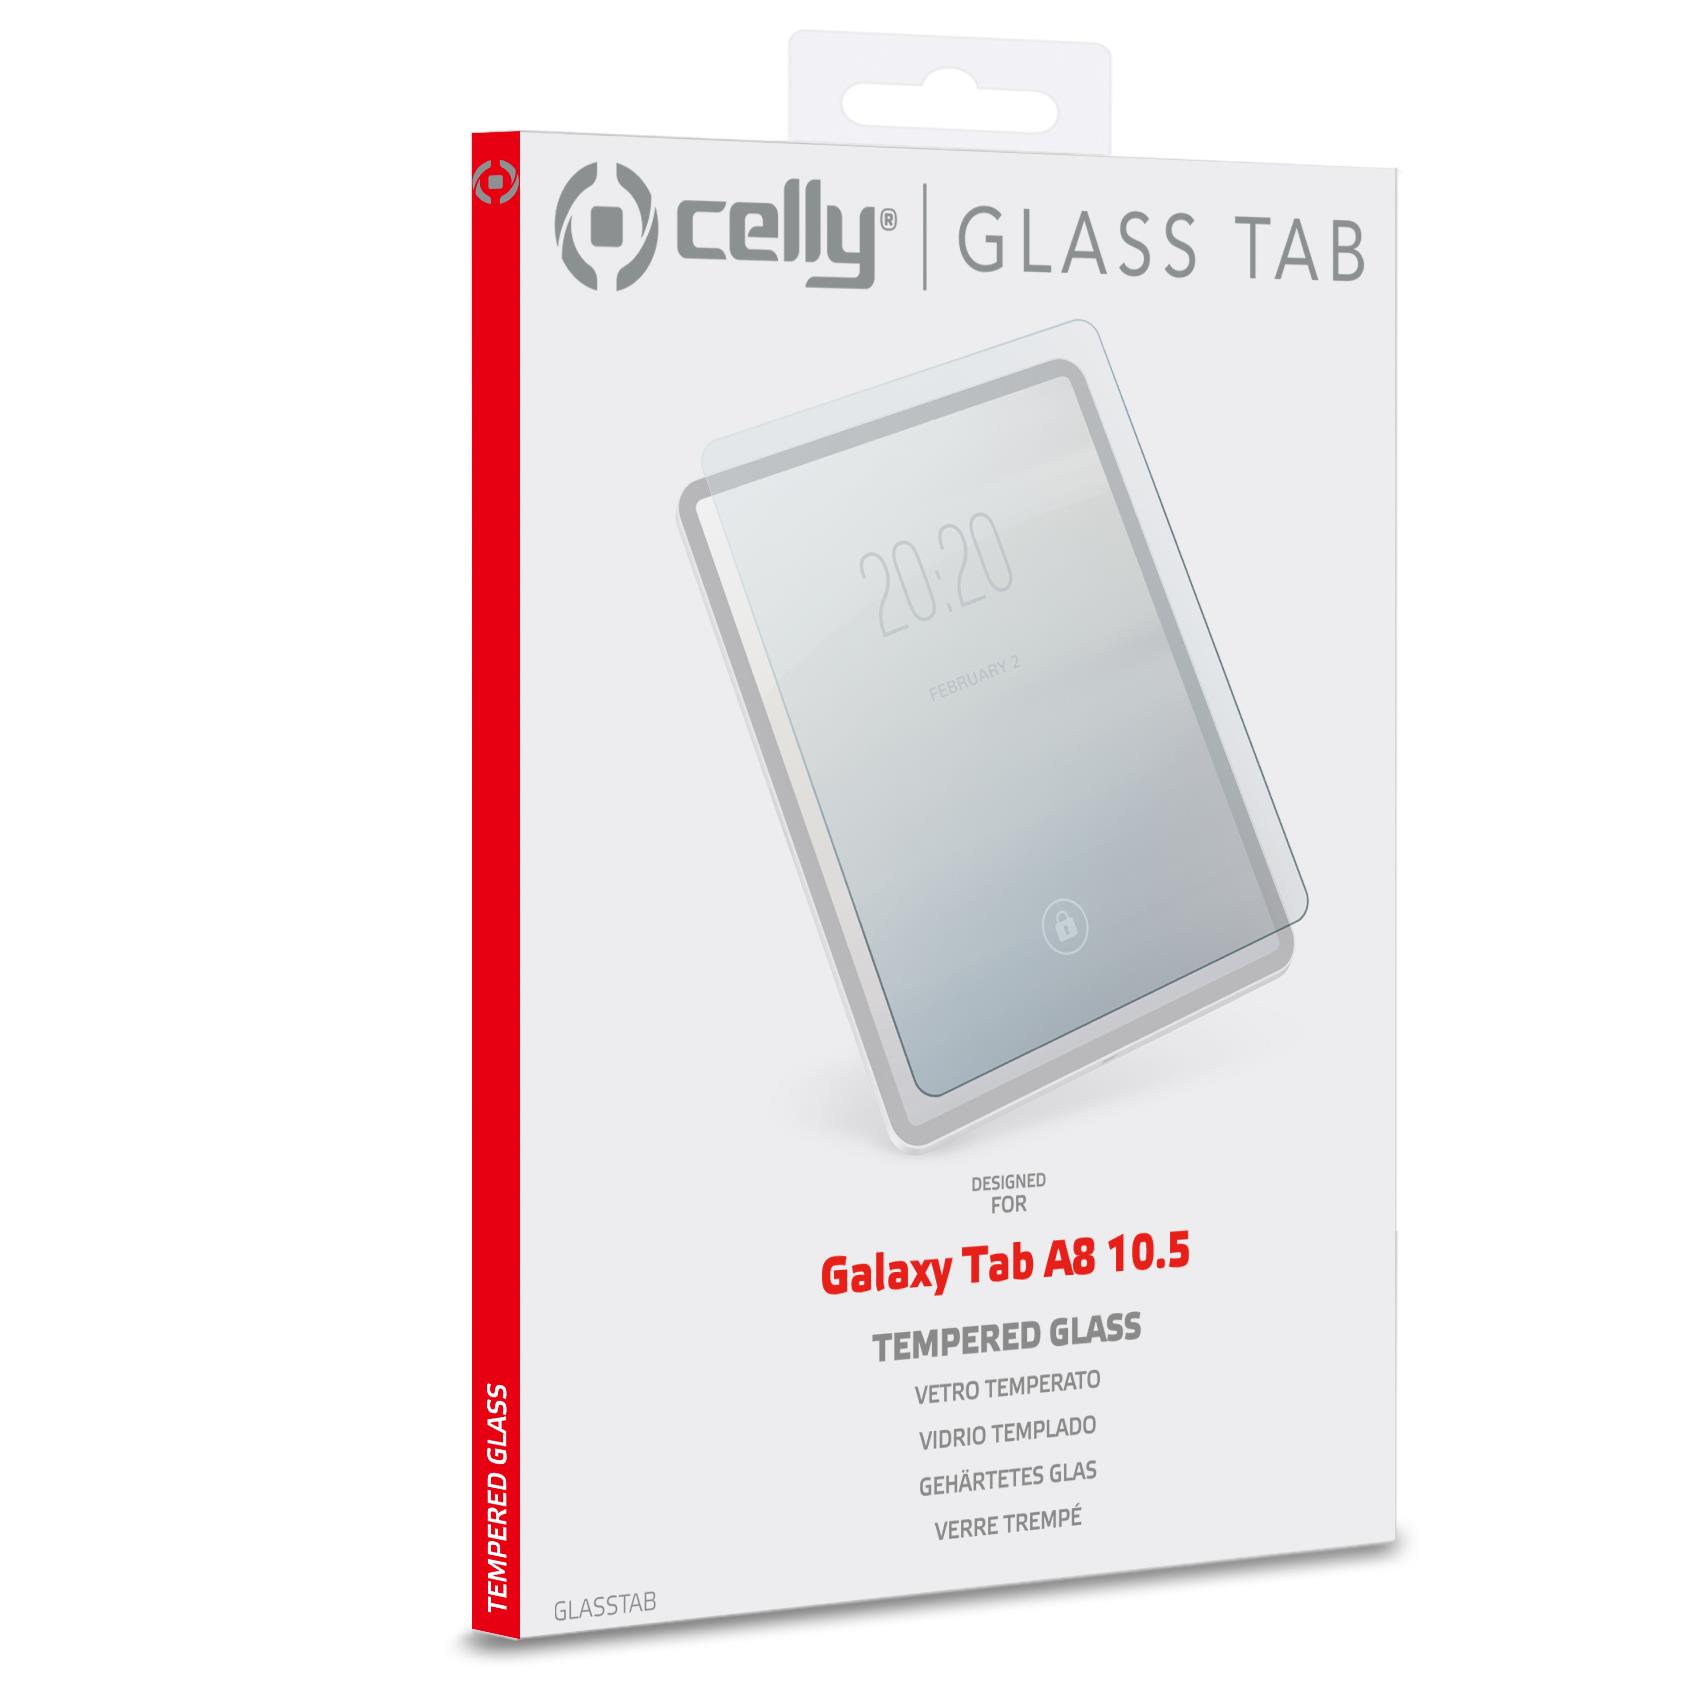 Glass Tab Galaxy Tab A8 10 5 Celly Glasstab09 8021735201243